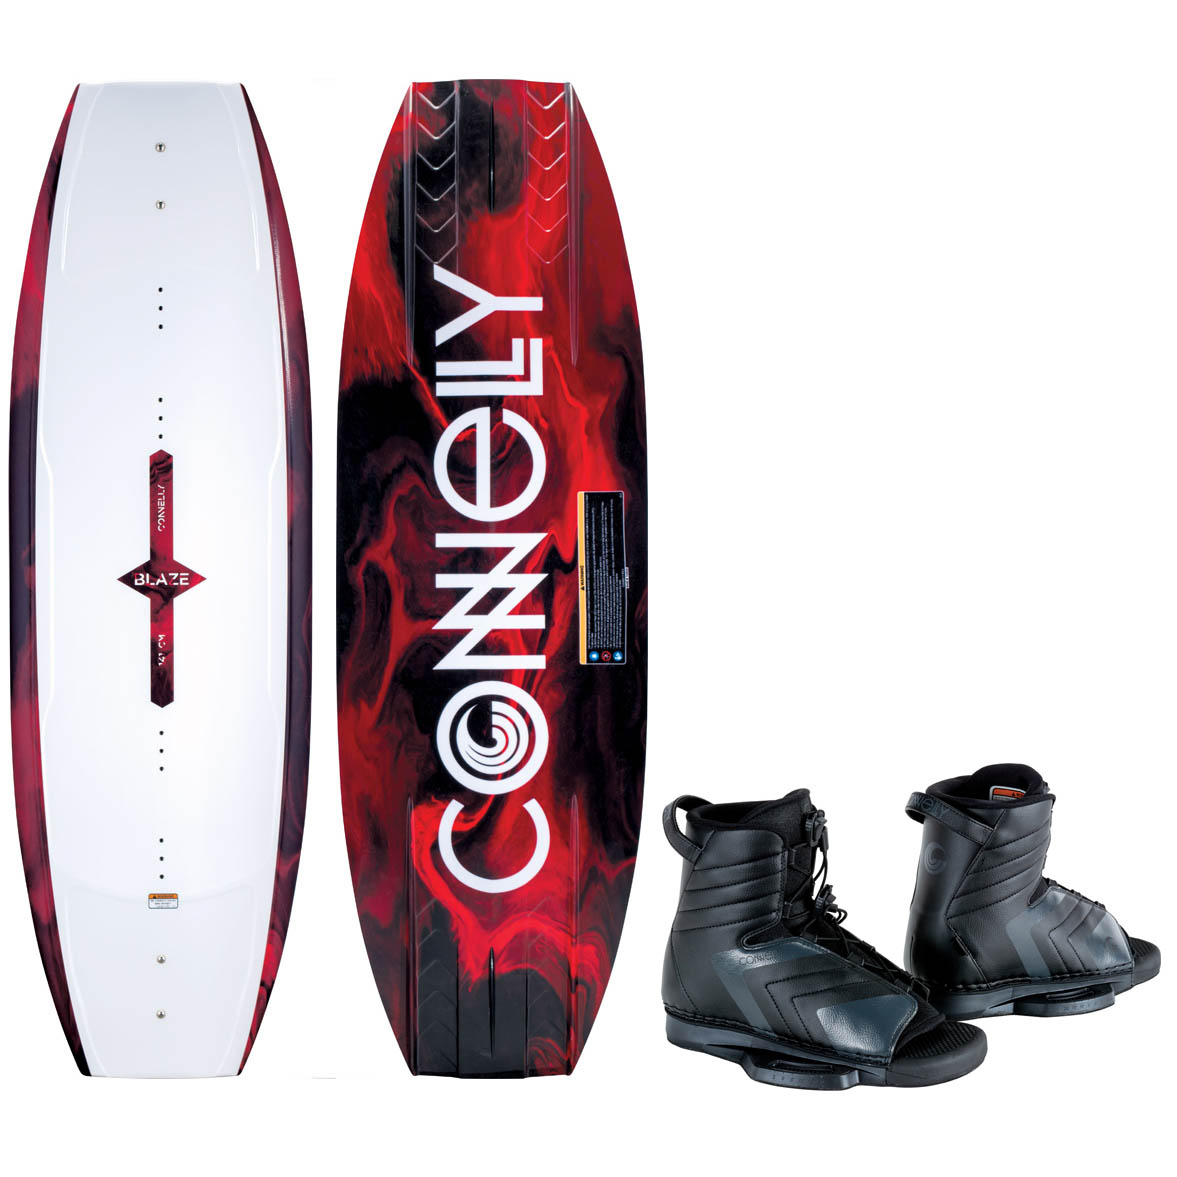 Connelly Blaze ensemble de wakeboard 141 cm avec chausses Optima